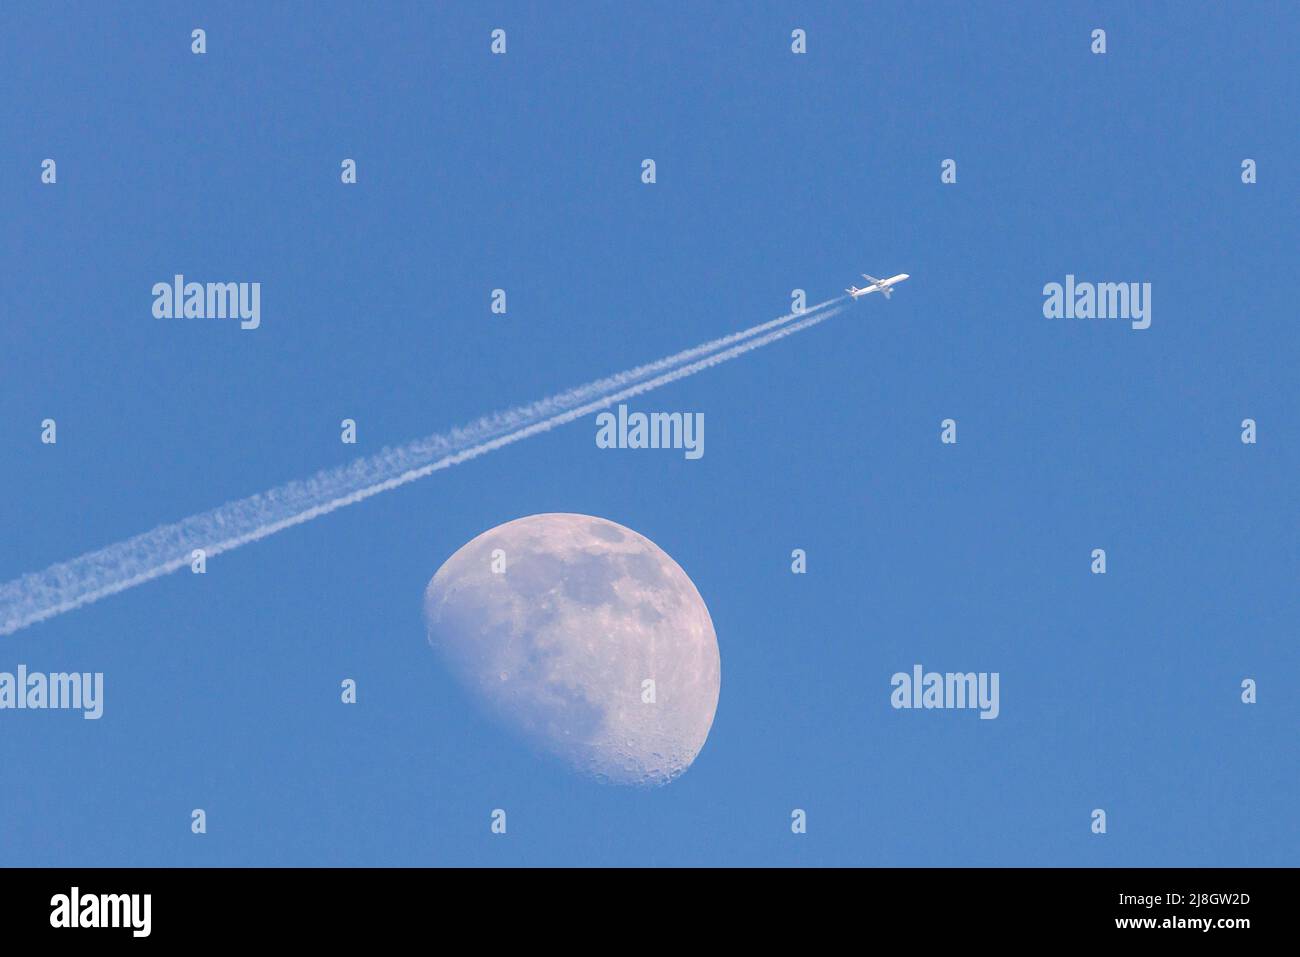 Lune blanche le jour sur un ciel bleu sans nuages. Un avion survole la lune en laissant une trace de condensation. Banque D'Images